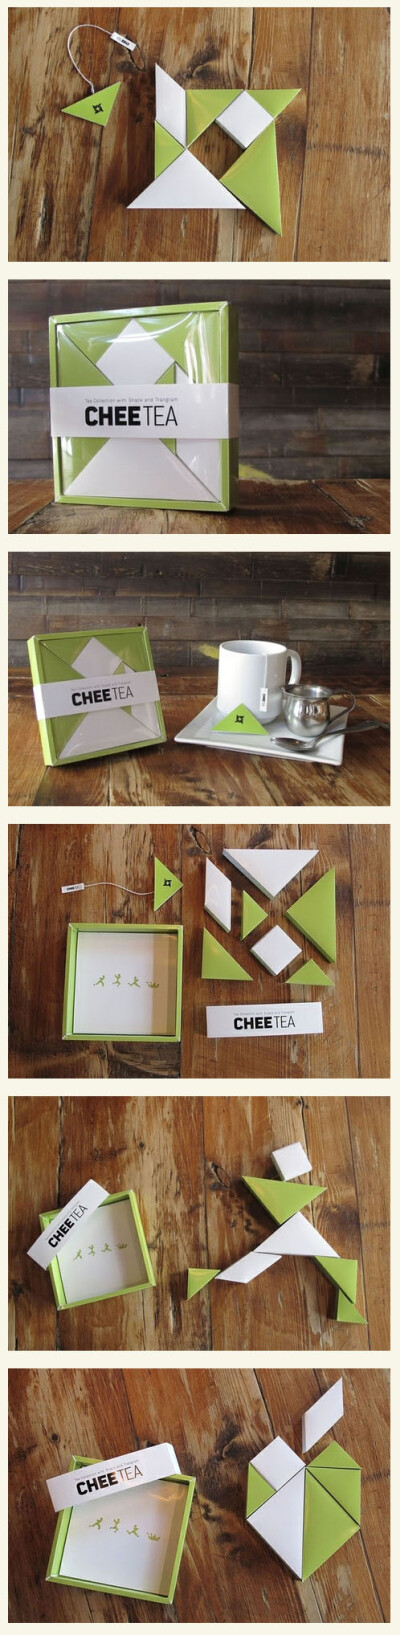 自于美国的Dho Yee Chung所带来的这款Chee Tea七巧板茶包设计